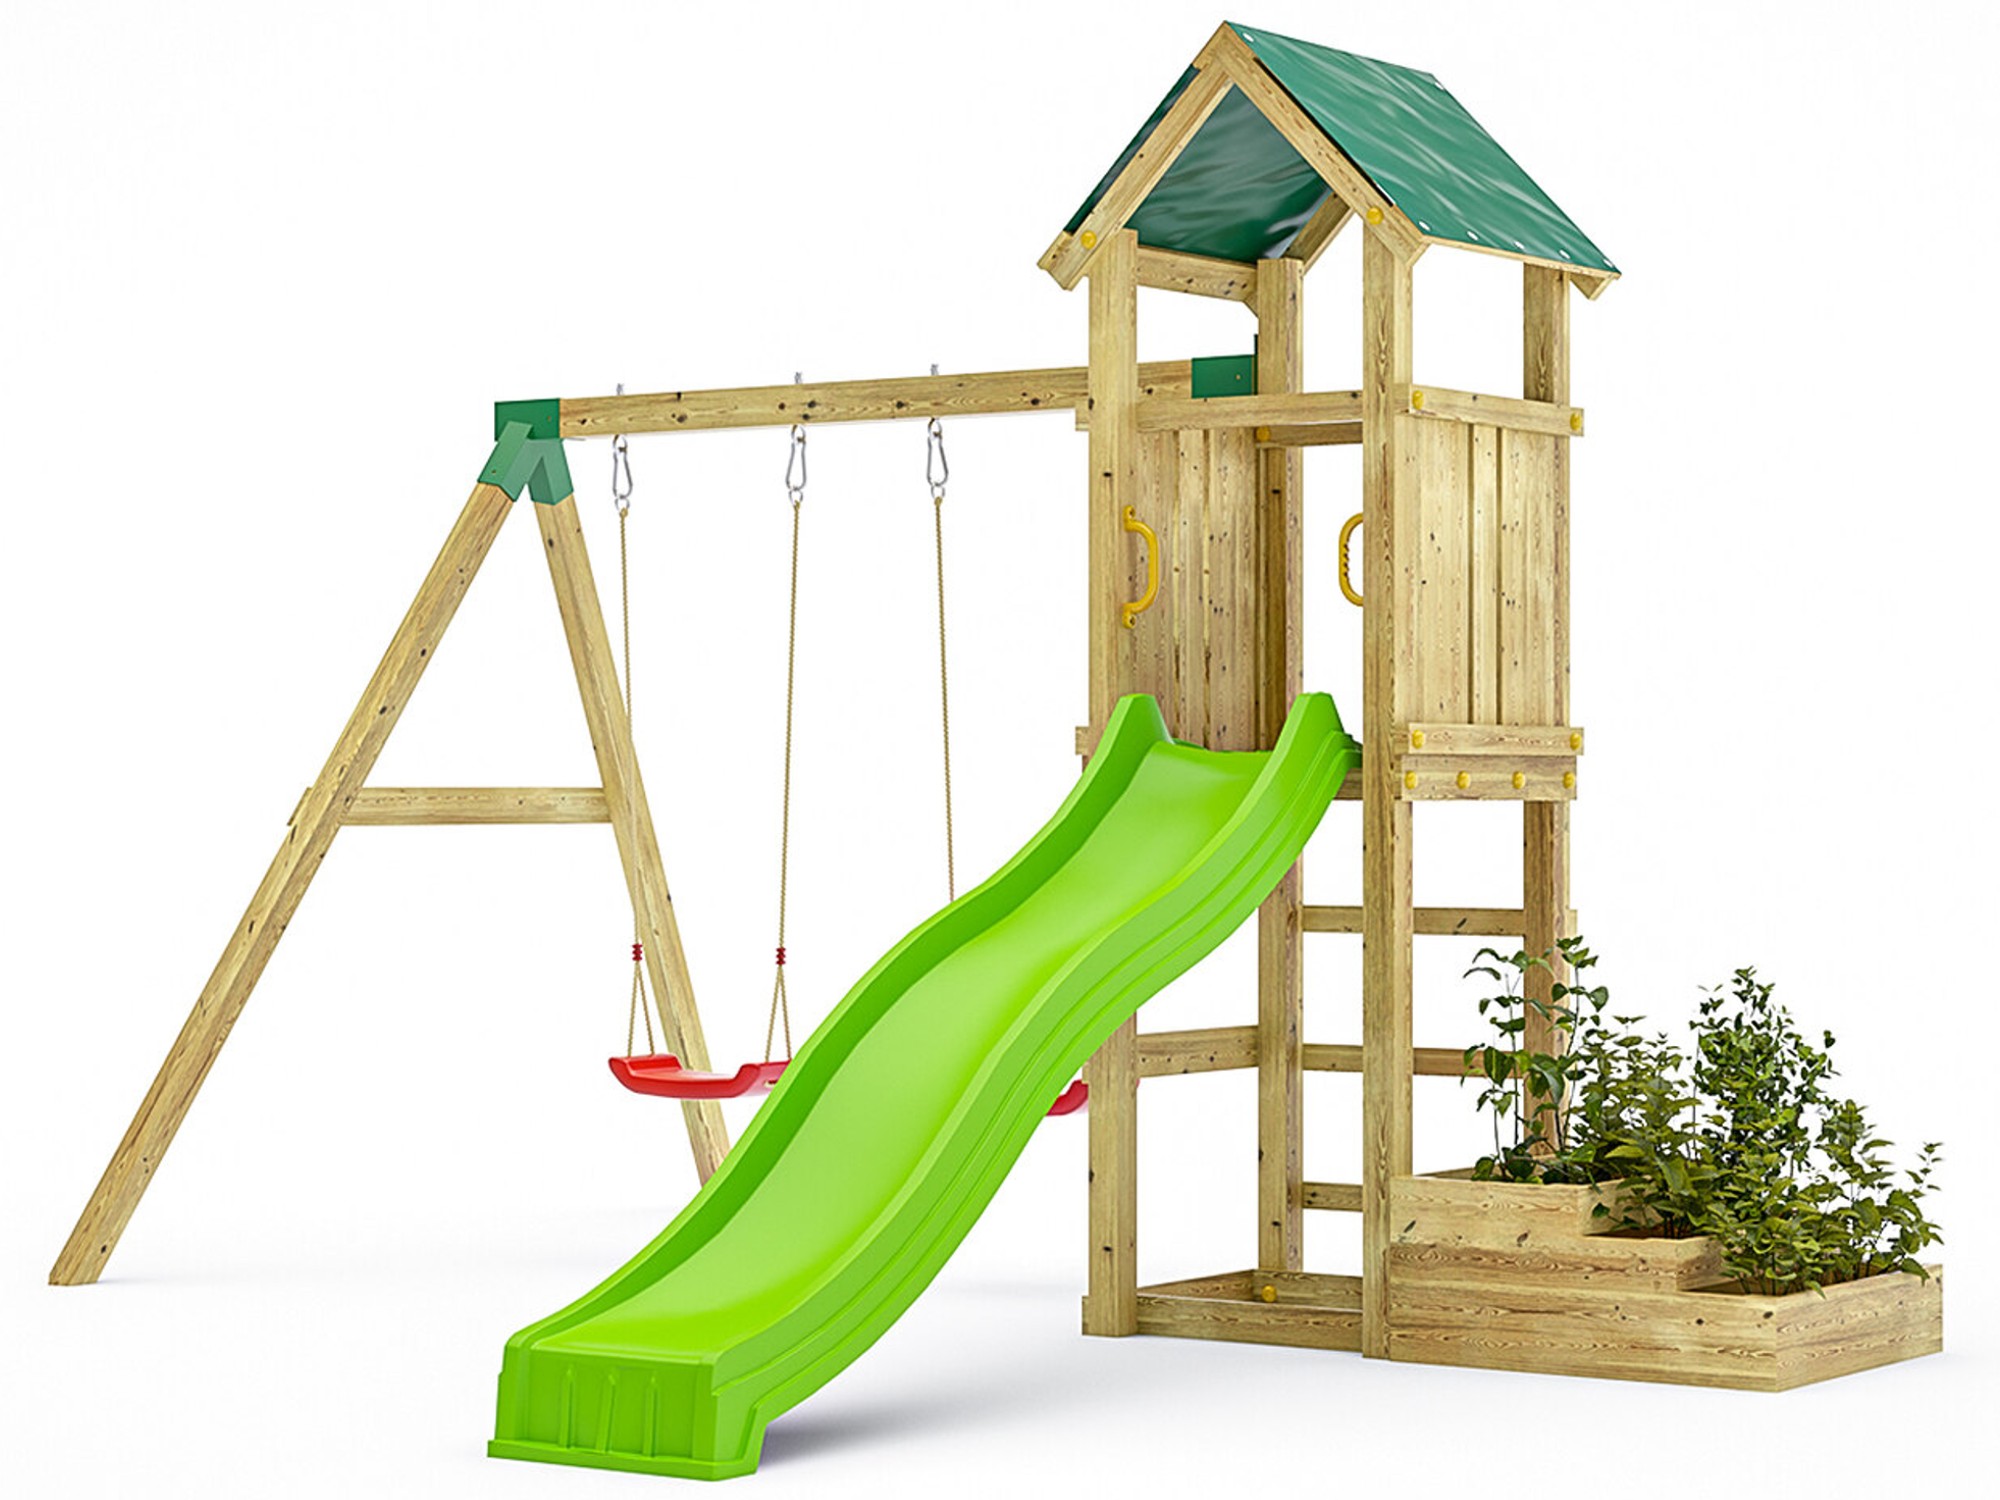 Plac zabaw drewniany ogrodowy Green Space KDI domek, zjedalnia, 2x hutawka, drabinka